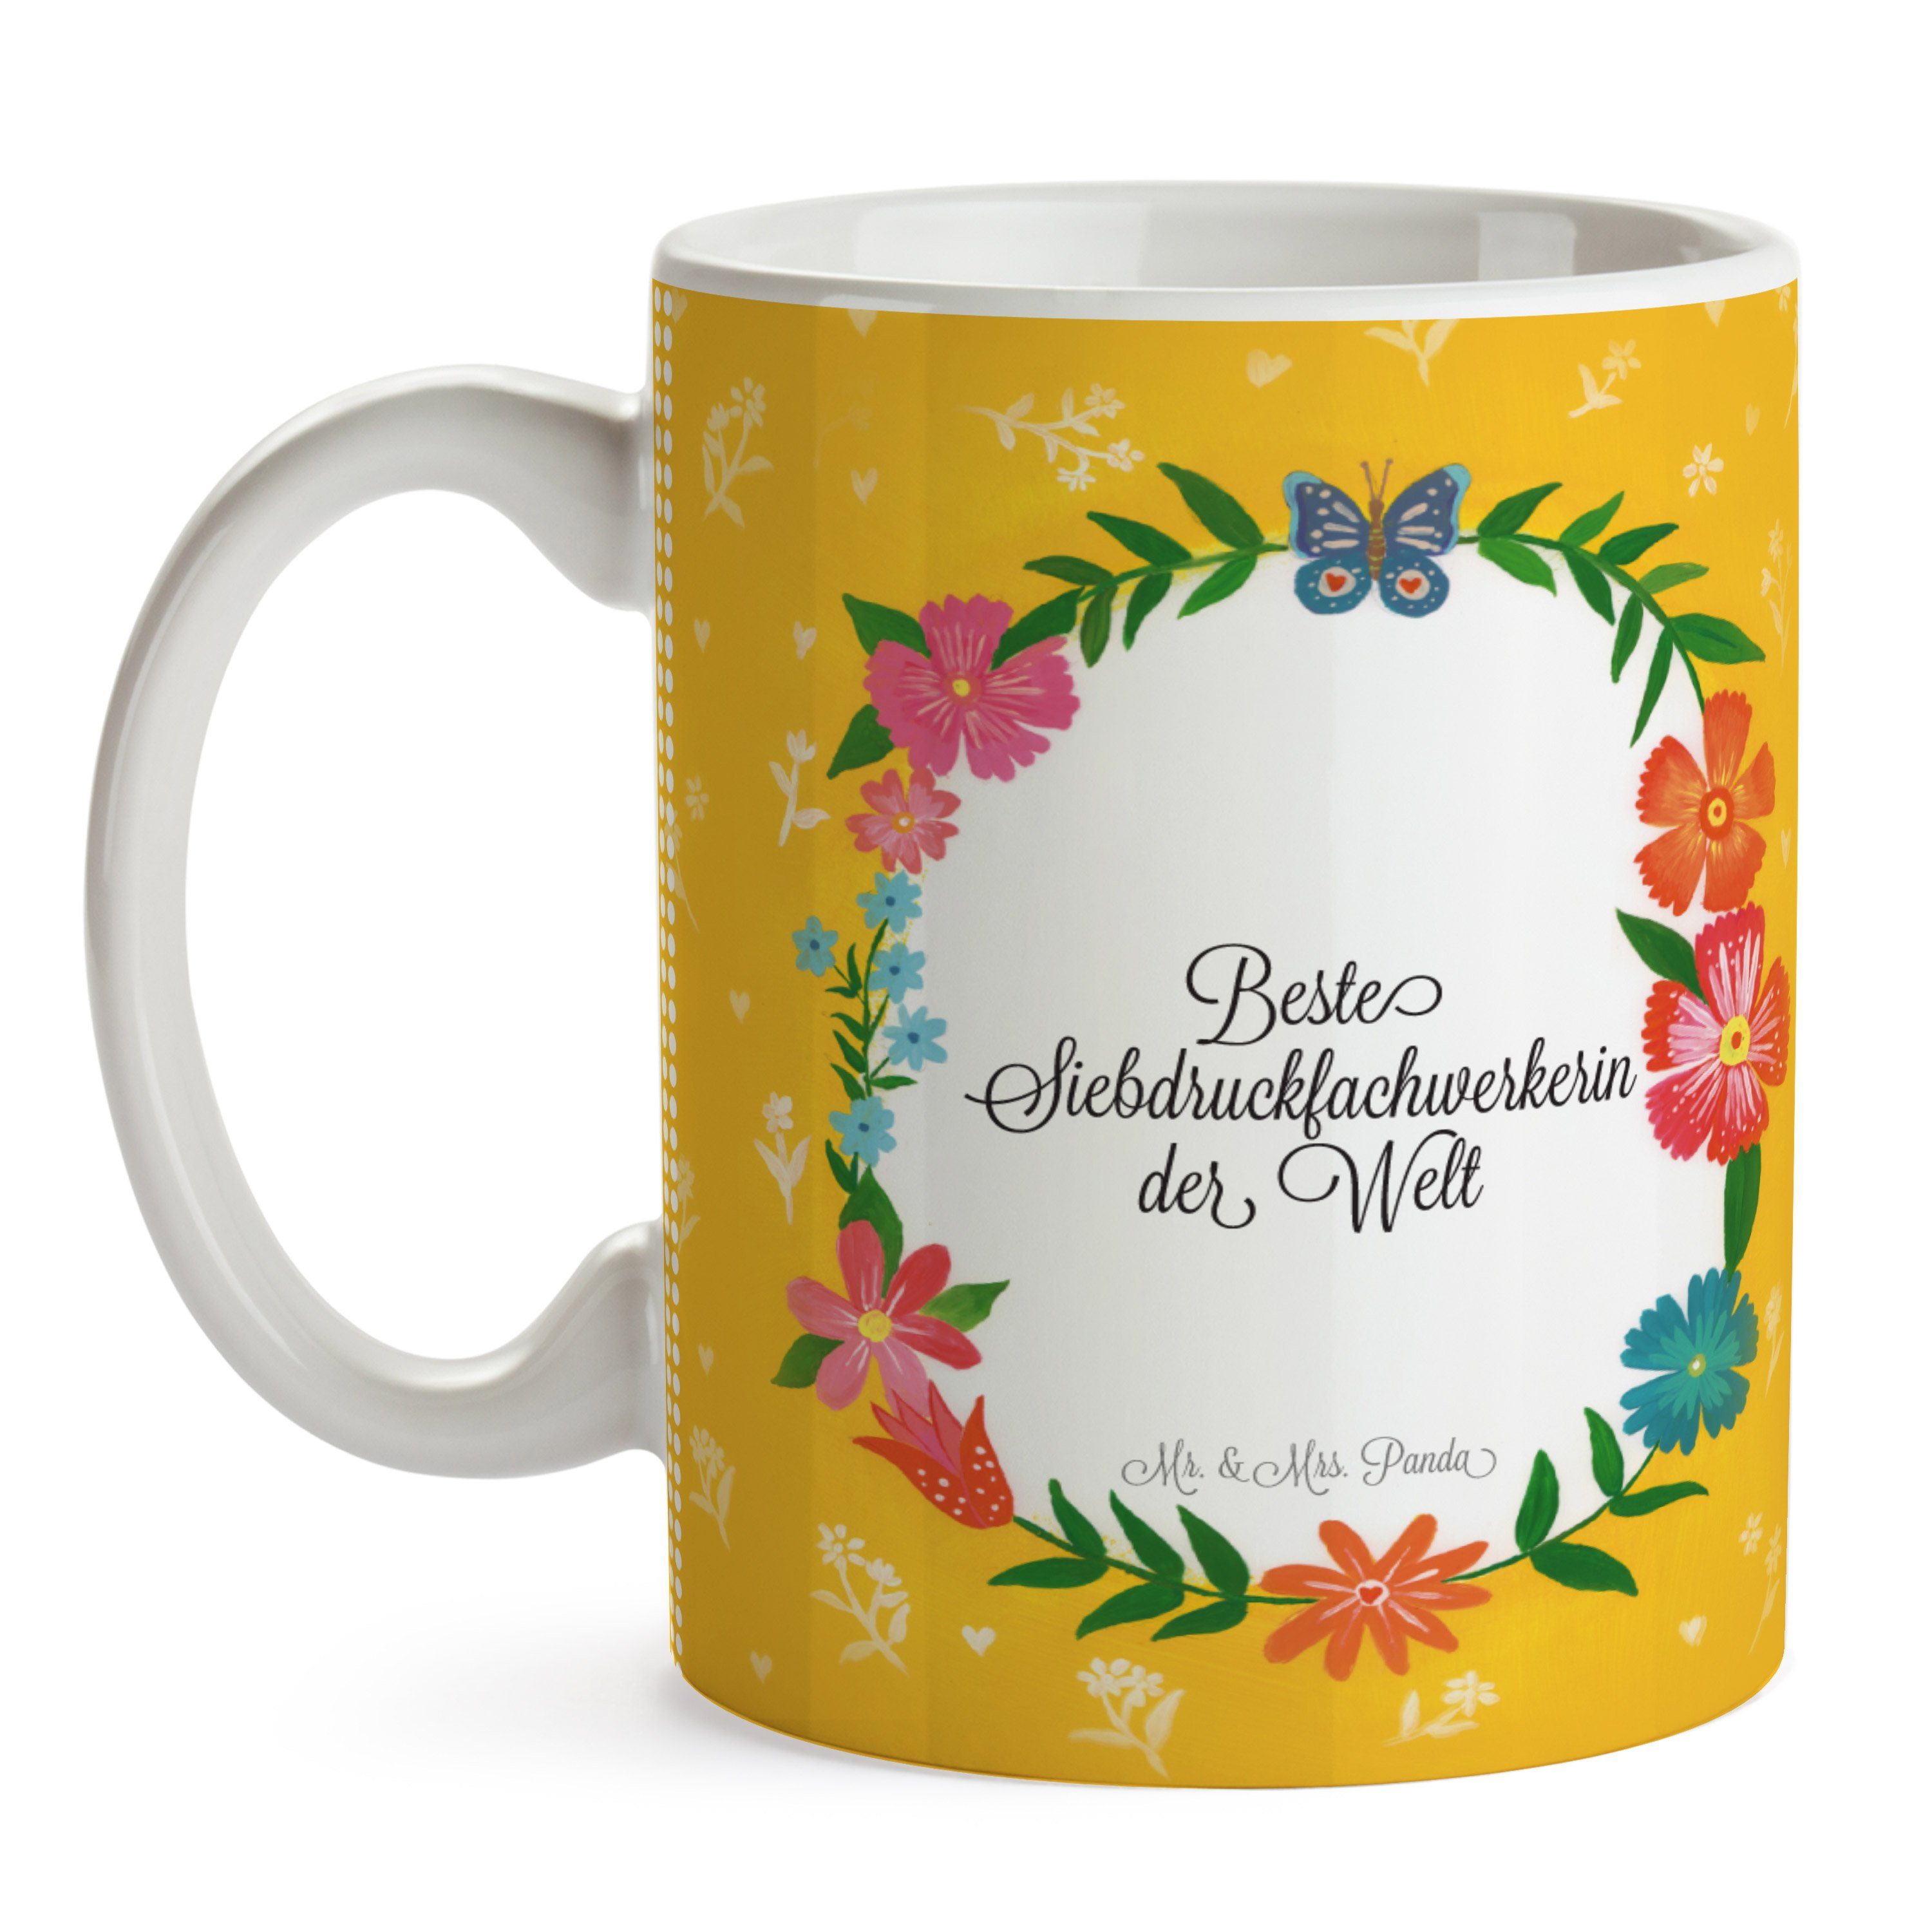 Mr. & Mrs. Panda Tasse Schenken, Kaff, - Geschenk, Siebdruckfachwerkerin Keramik Diplom, Kaffeetasse